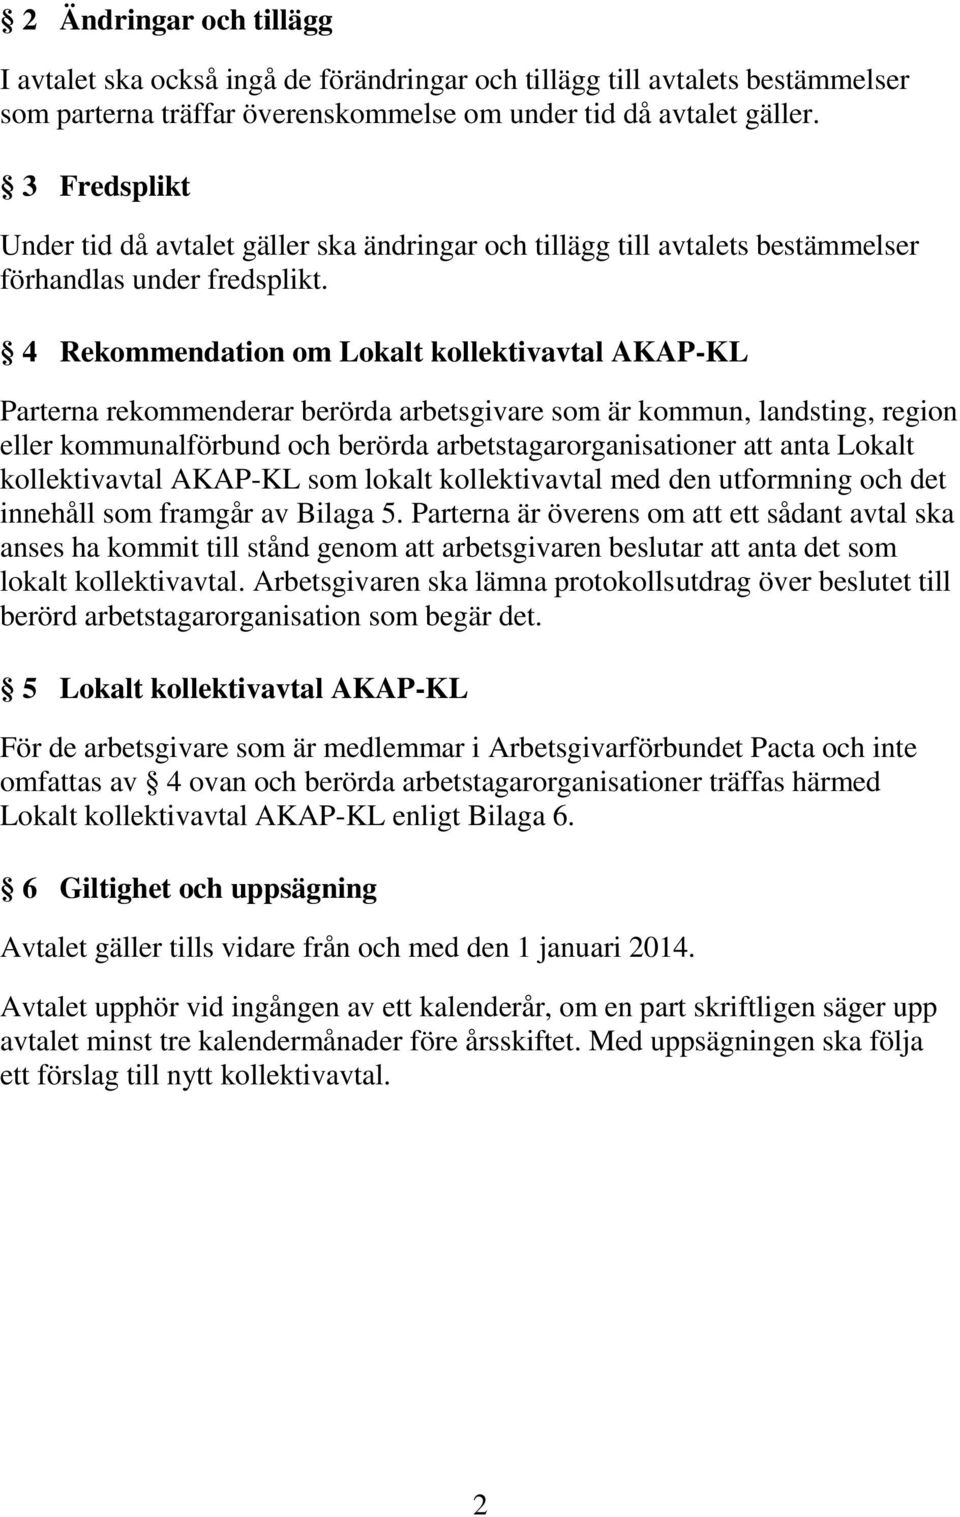 4 Rekommendation om Lokalt kollektivavtal AKAP-KL Parterna rekommenderar berörda arbetsgivare som är kommun, landsting, region eller kommunalförbund och berörda arbetstagarorganisationer att anta